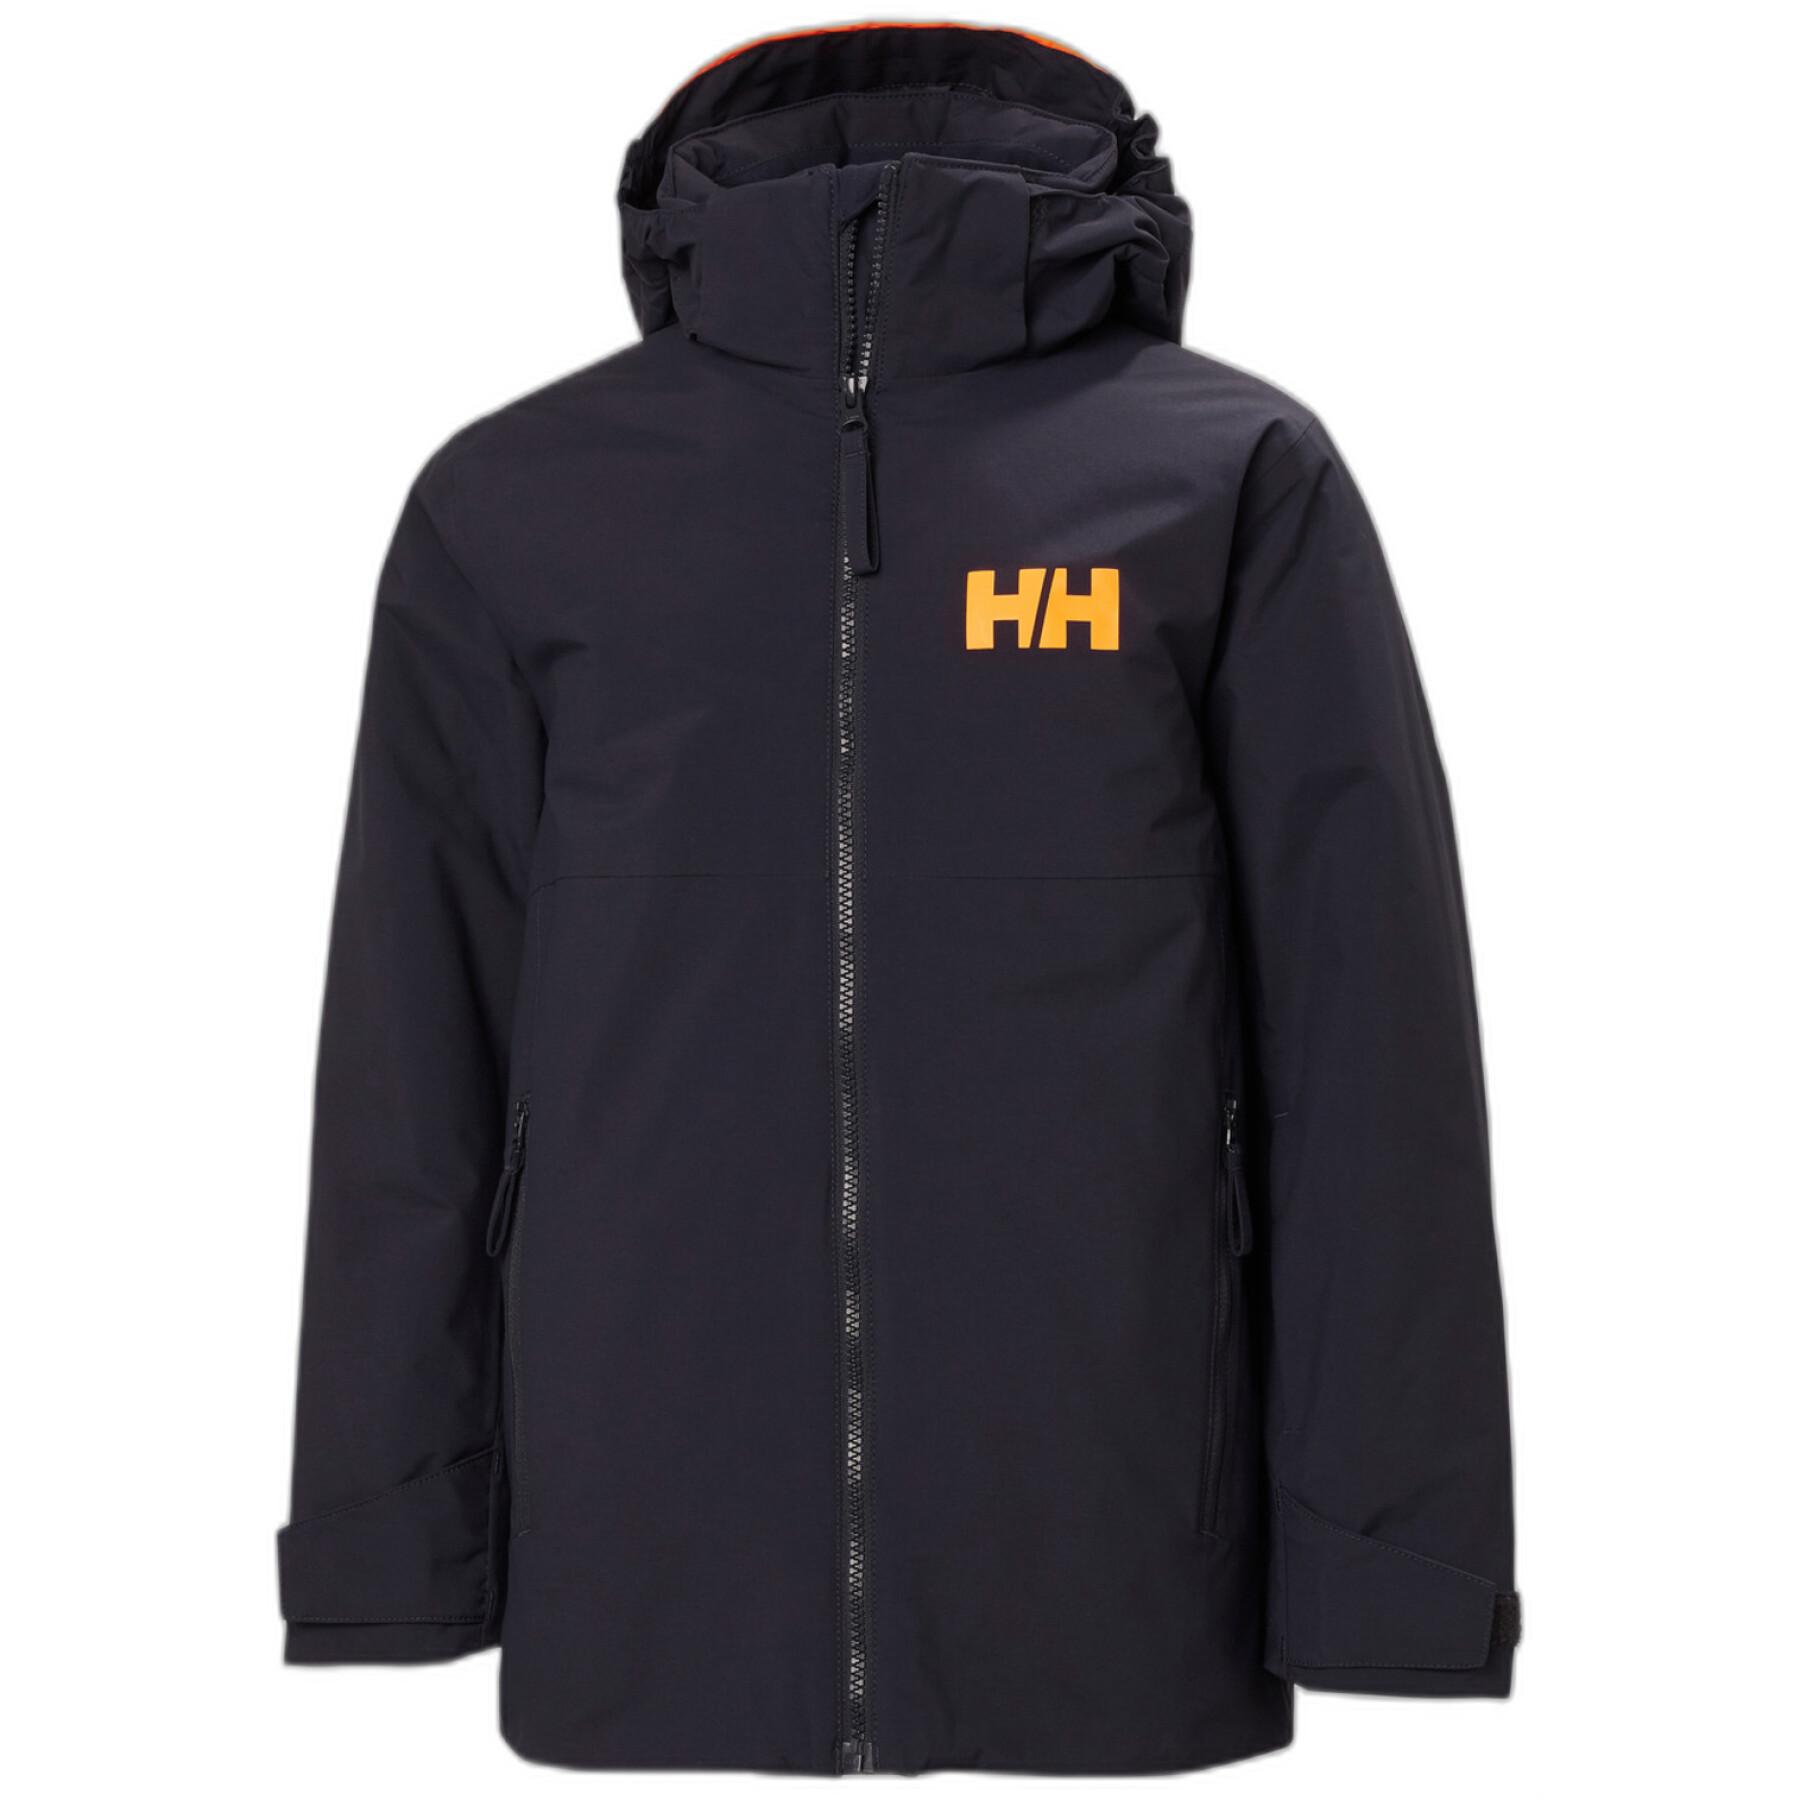 Children's ski jacket Helly Hansen Traverse